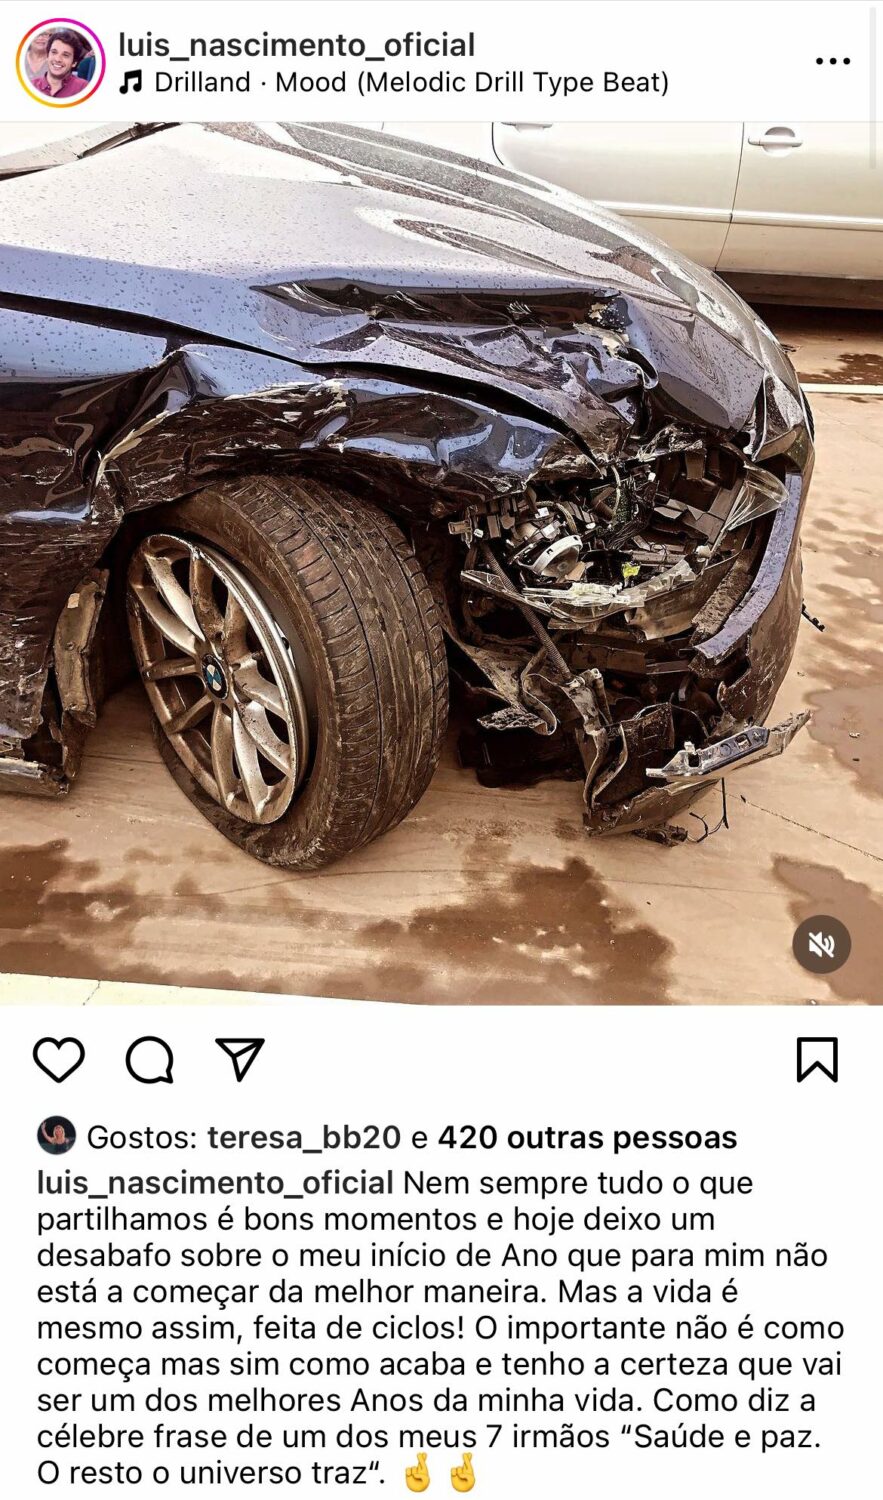 Luís Nascimento sofre acidente de viação: &#8220;O ano não está a começar da melhor maneira&#8221;